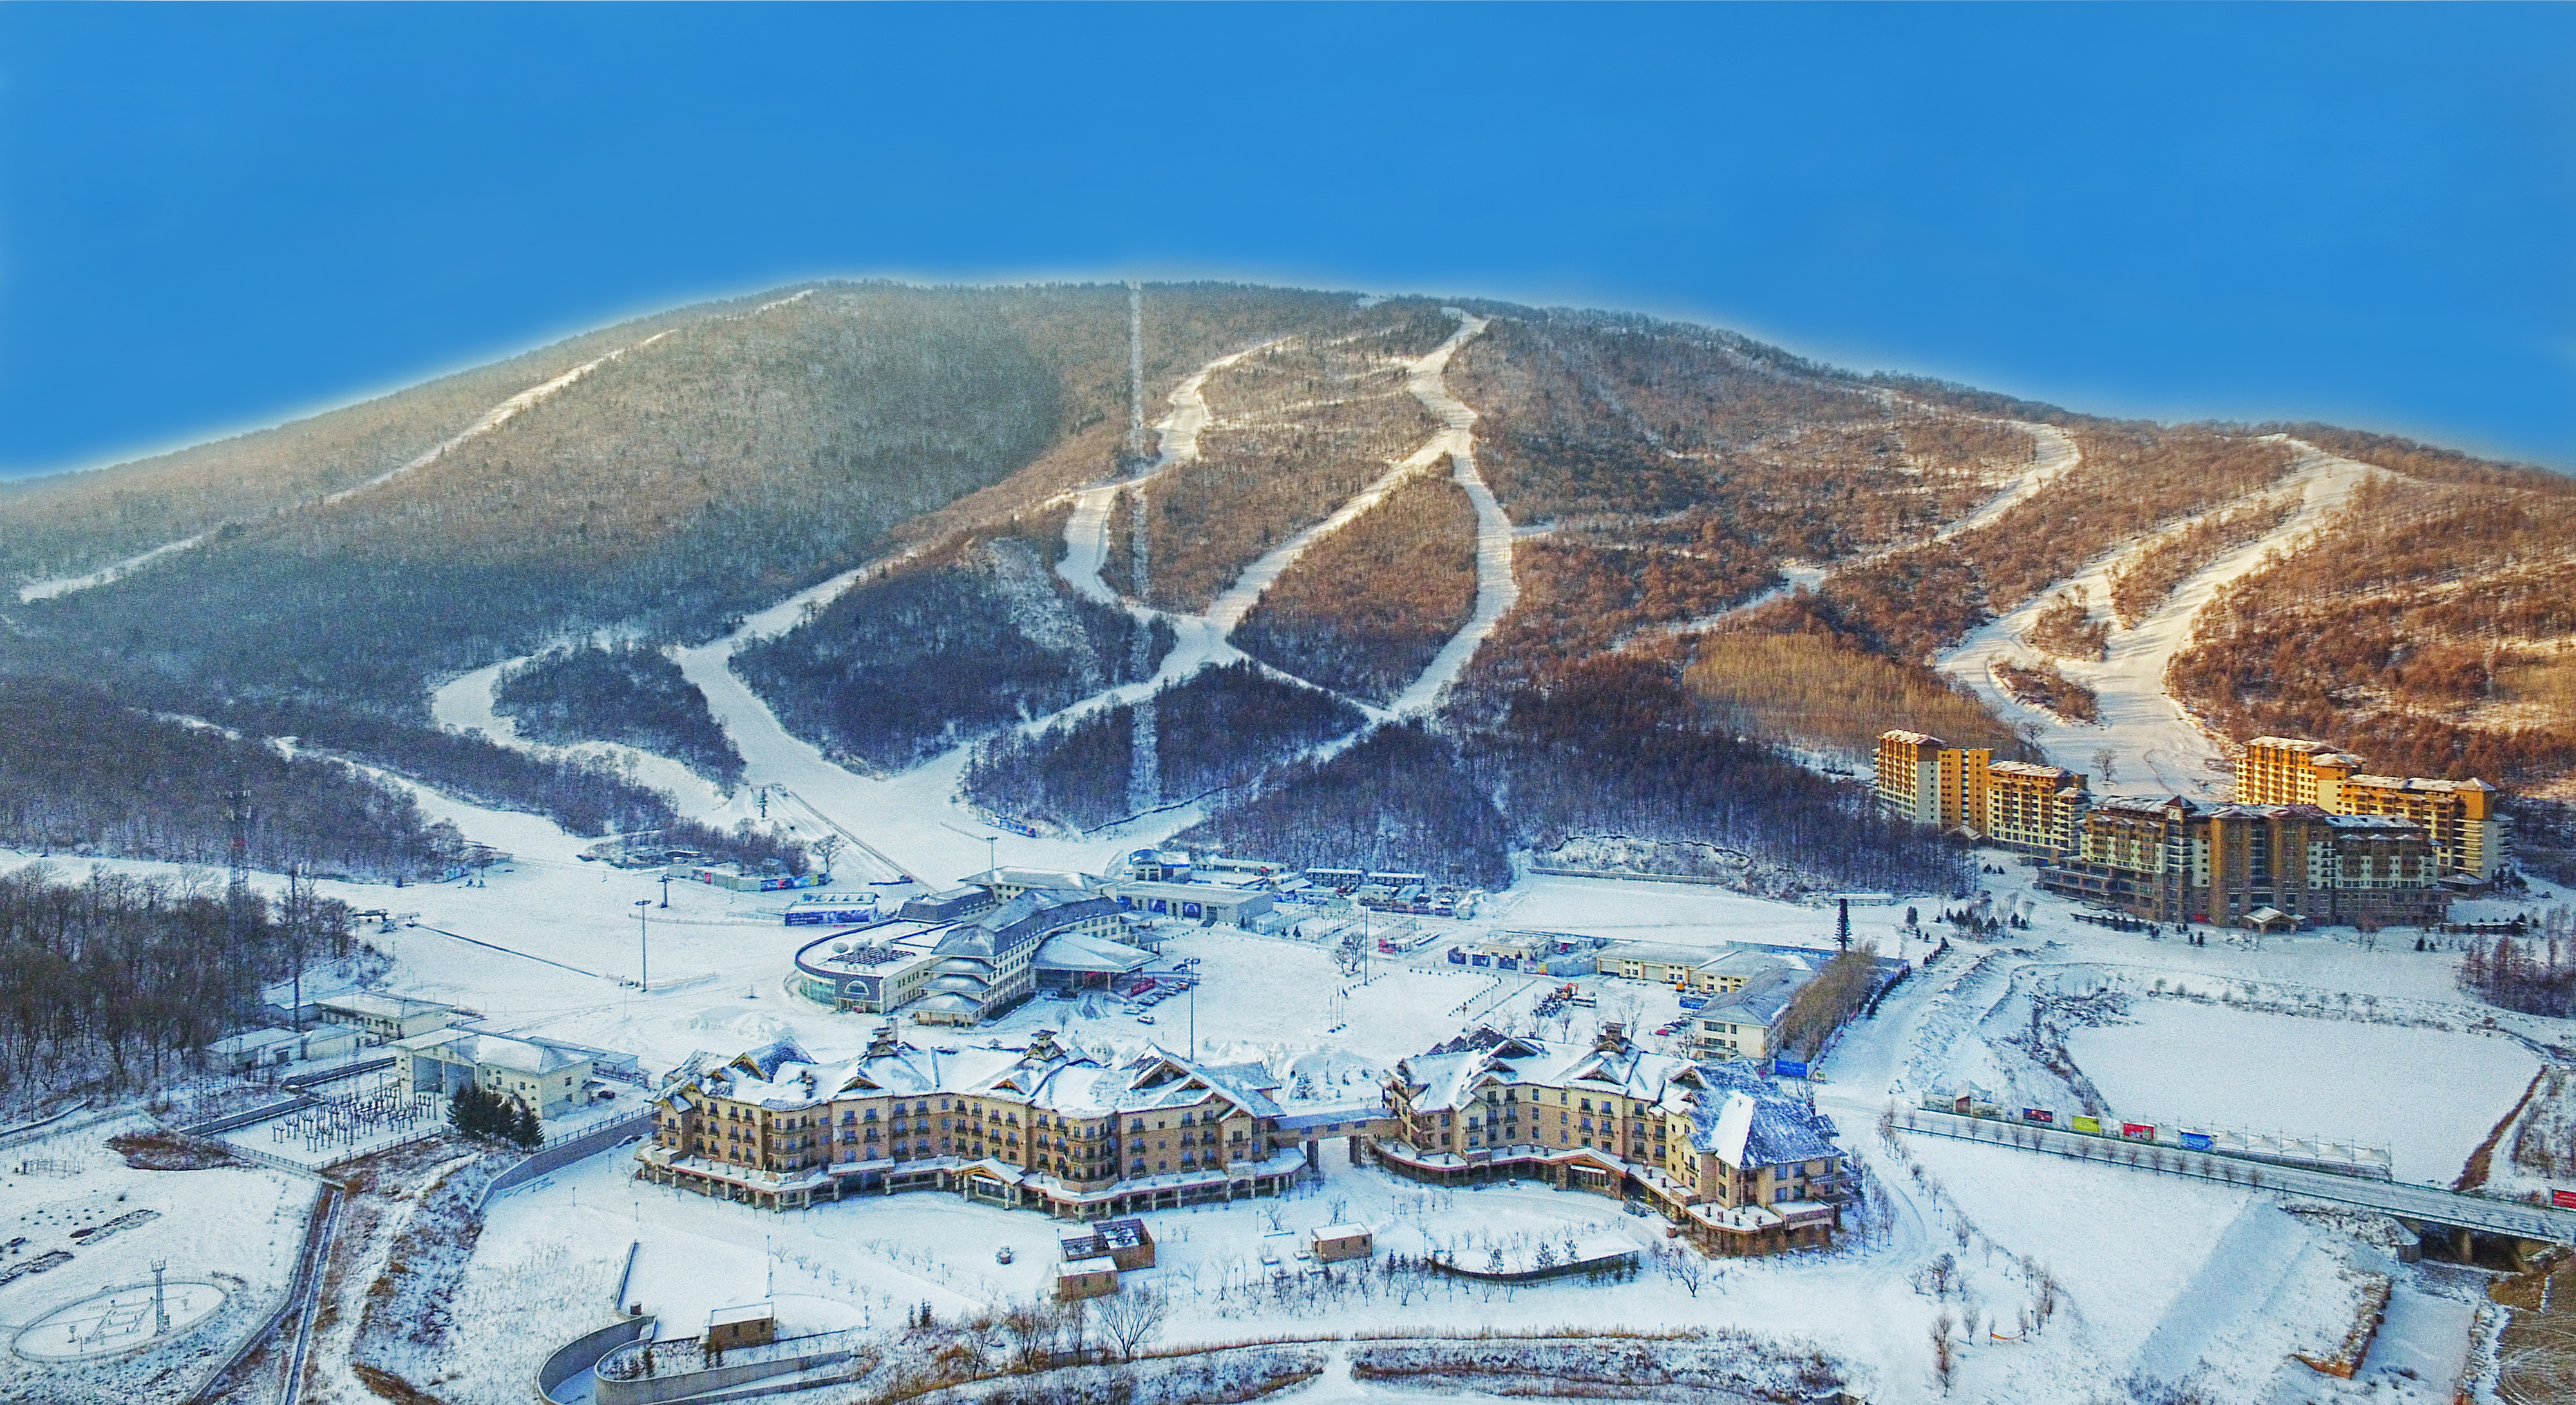 5小时车程,在三面环山的930米垂直坡地上,clubmed北大壶共有19 条滑雪